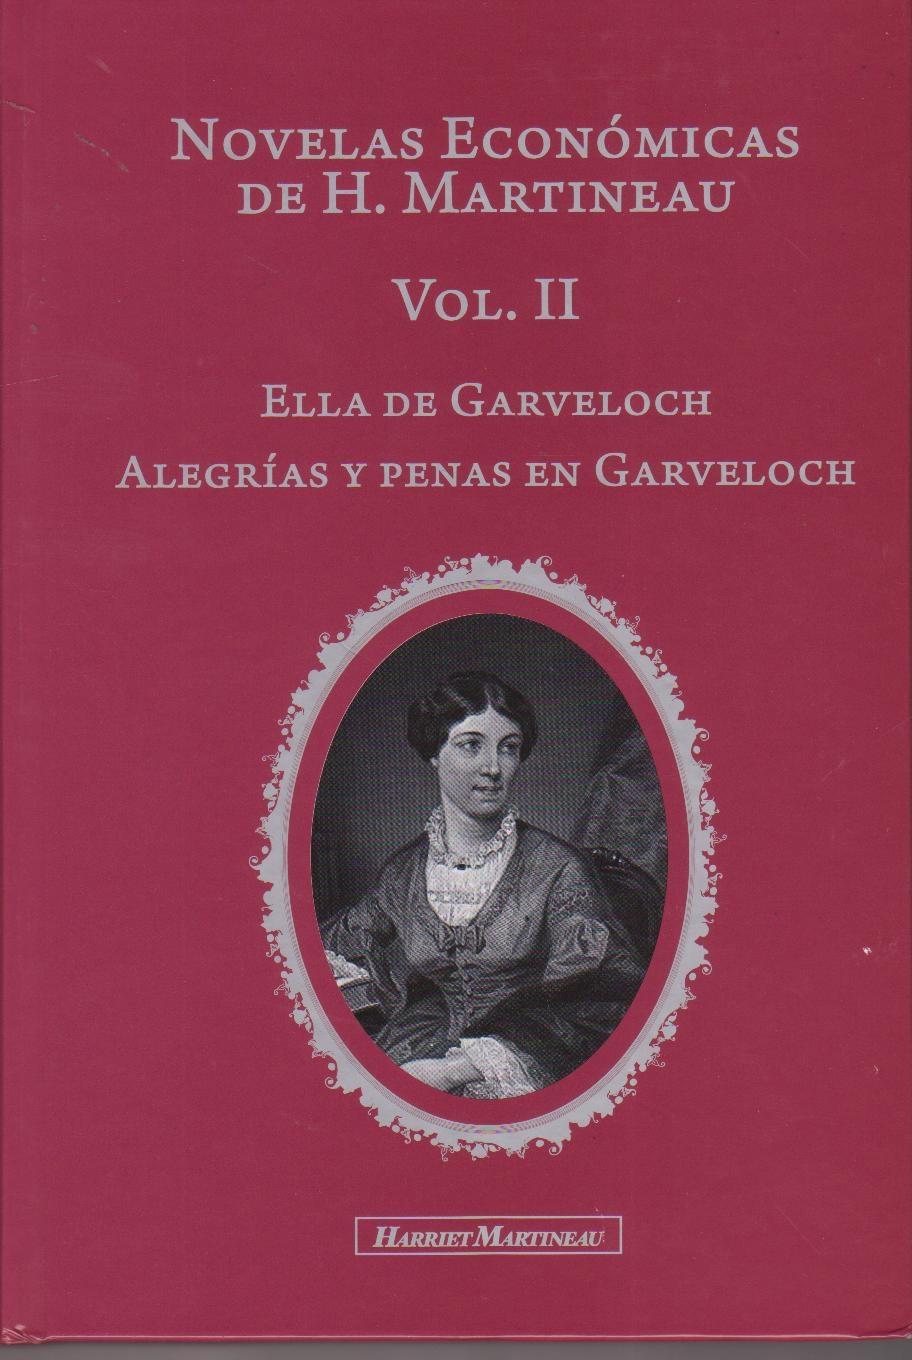 Novelas Económicas de H. Martineau Vol.II "Ella de Garveloch y Alegrías y penas en Garveloch"